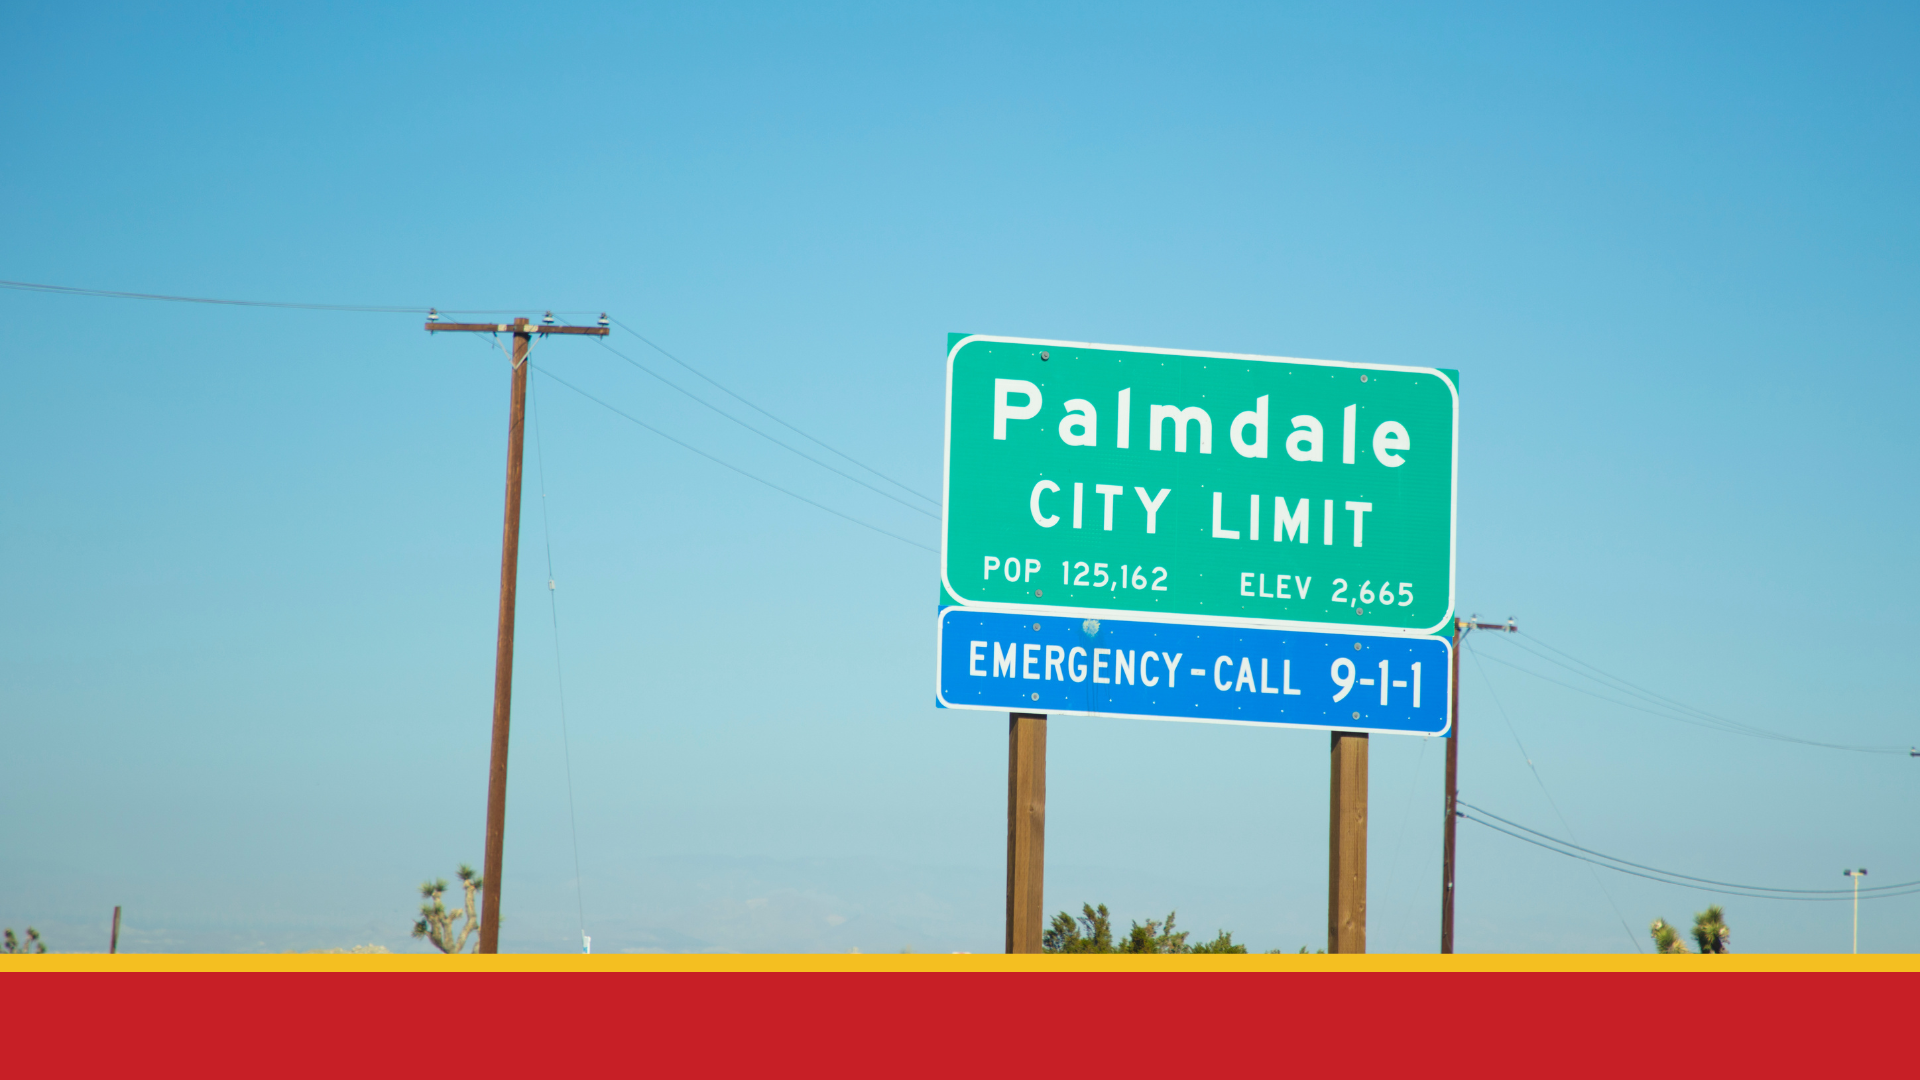 Palmdale city limit sign